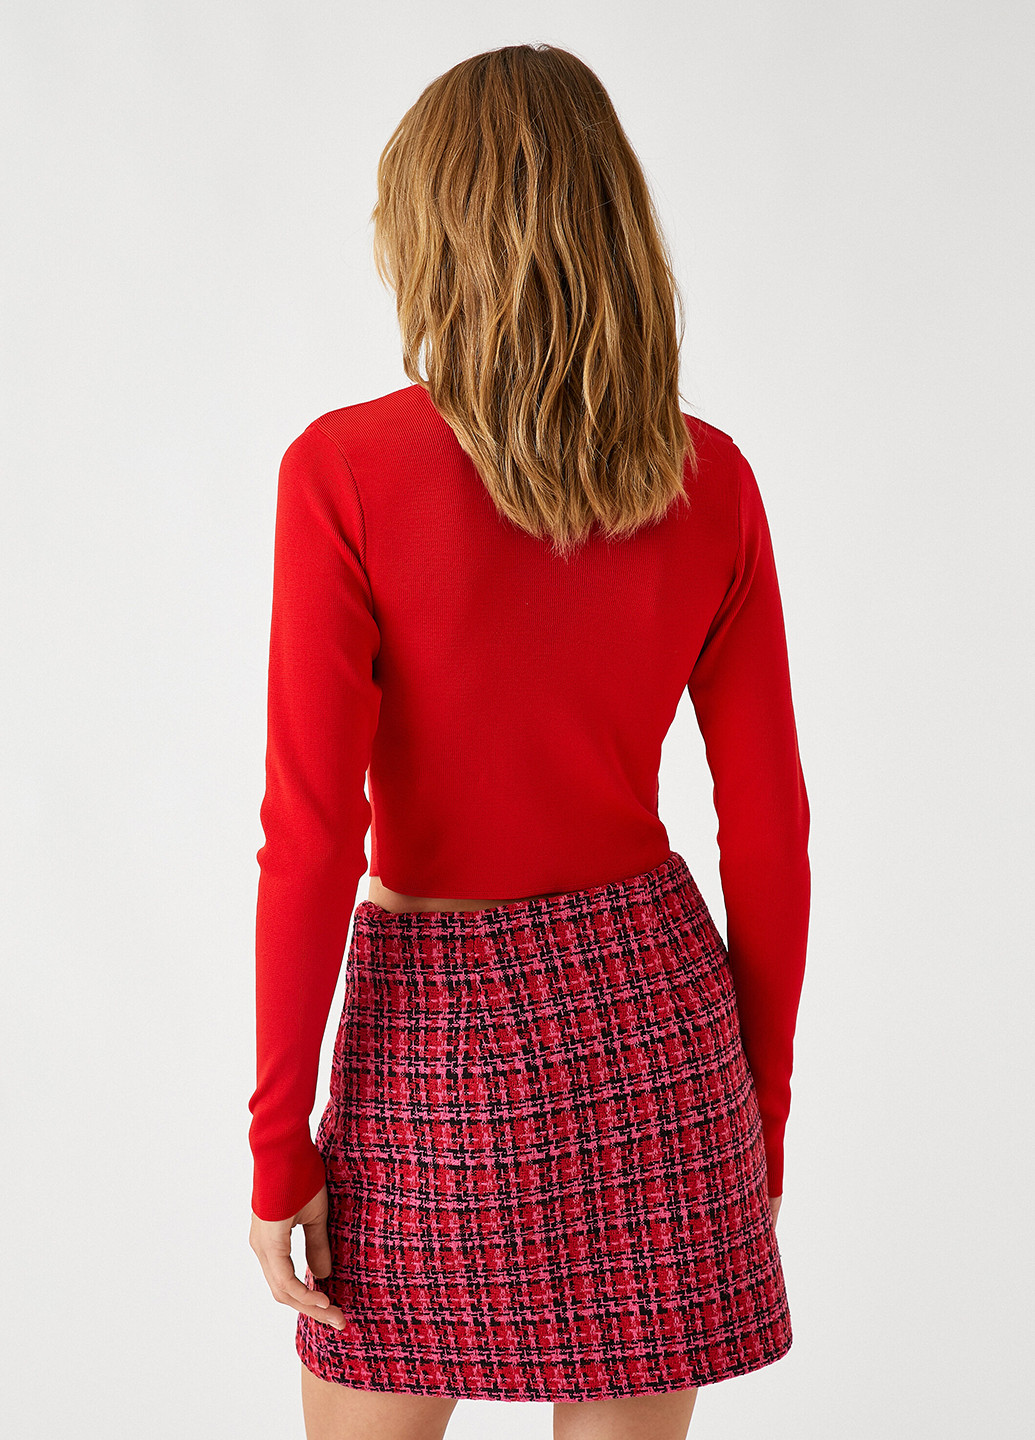 Красный демисезонный свитер пуловер KOTON